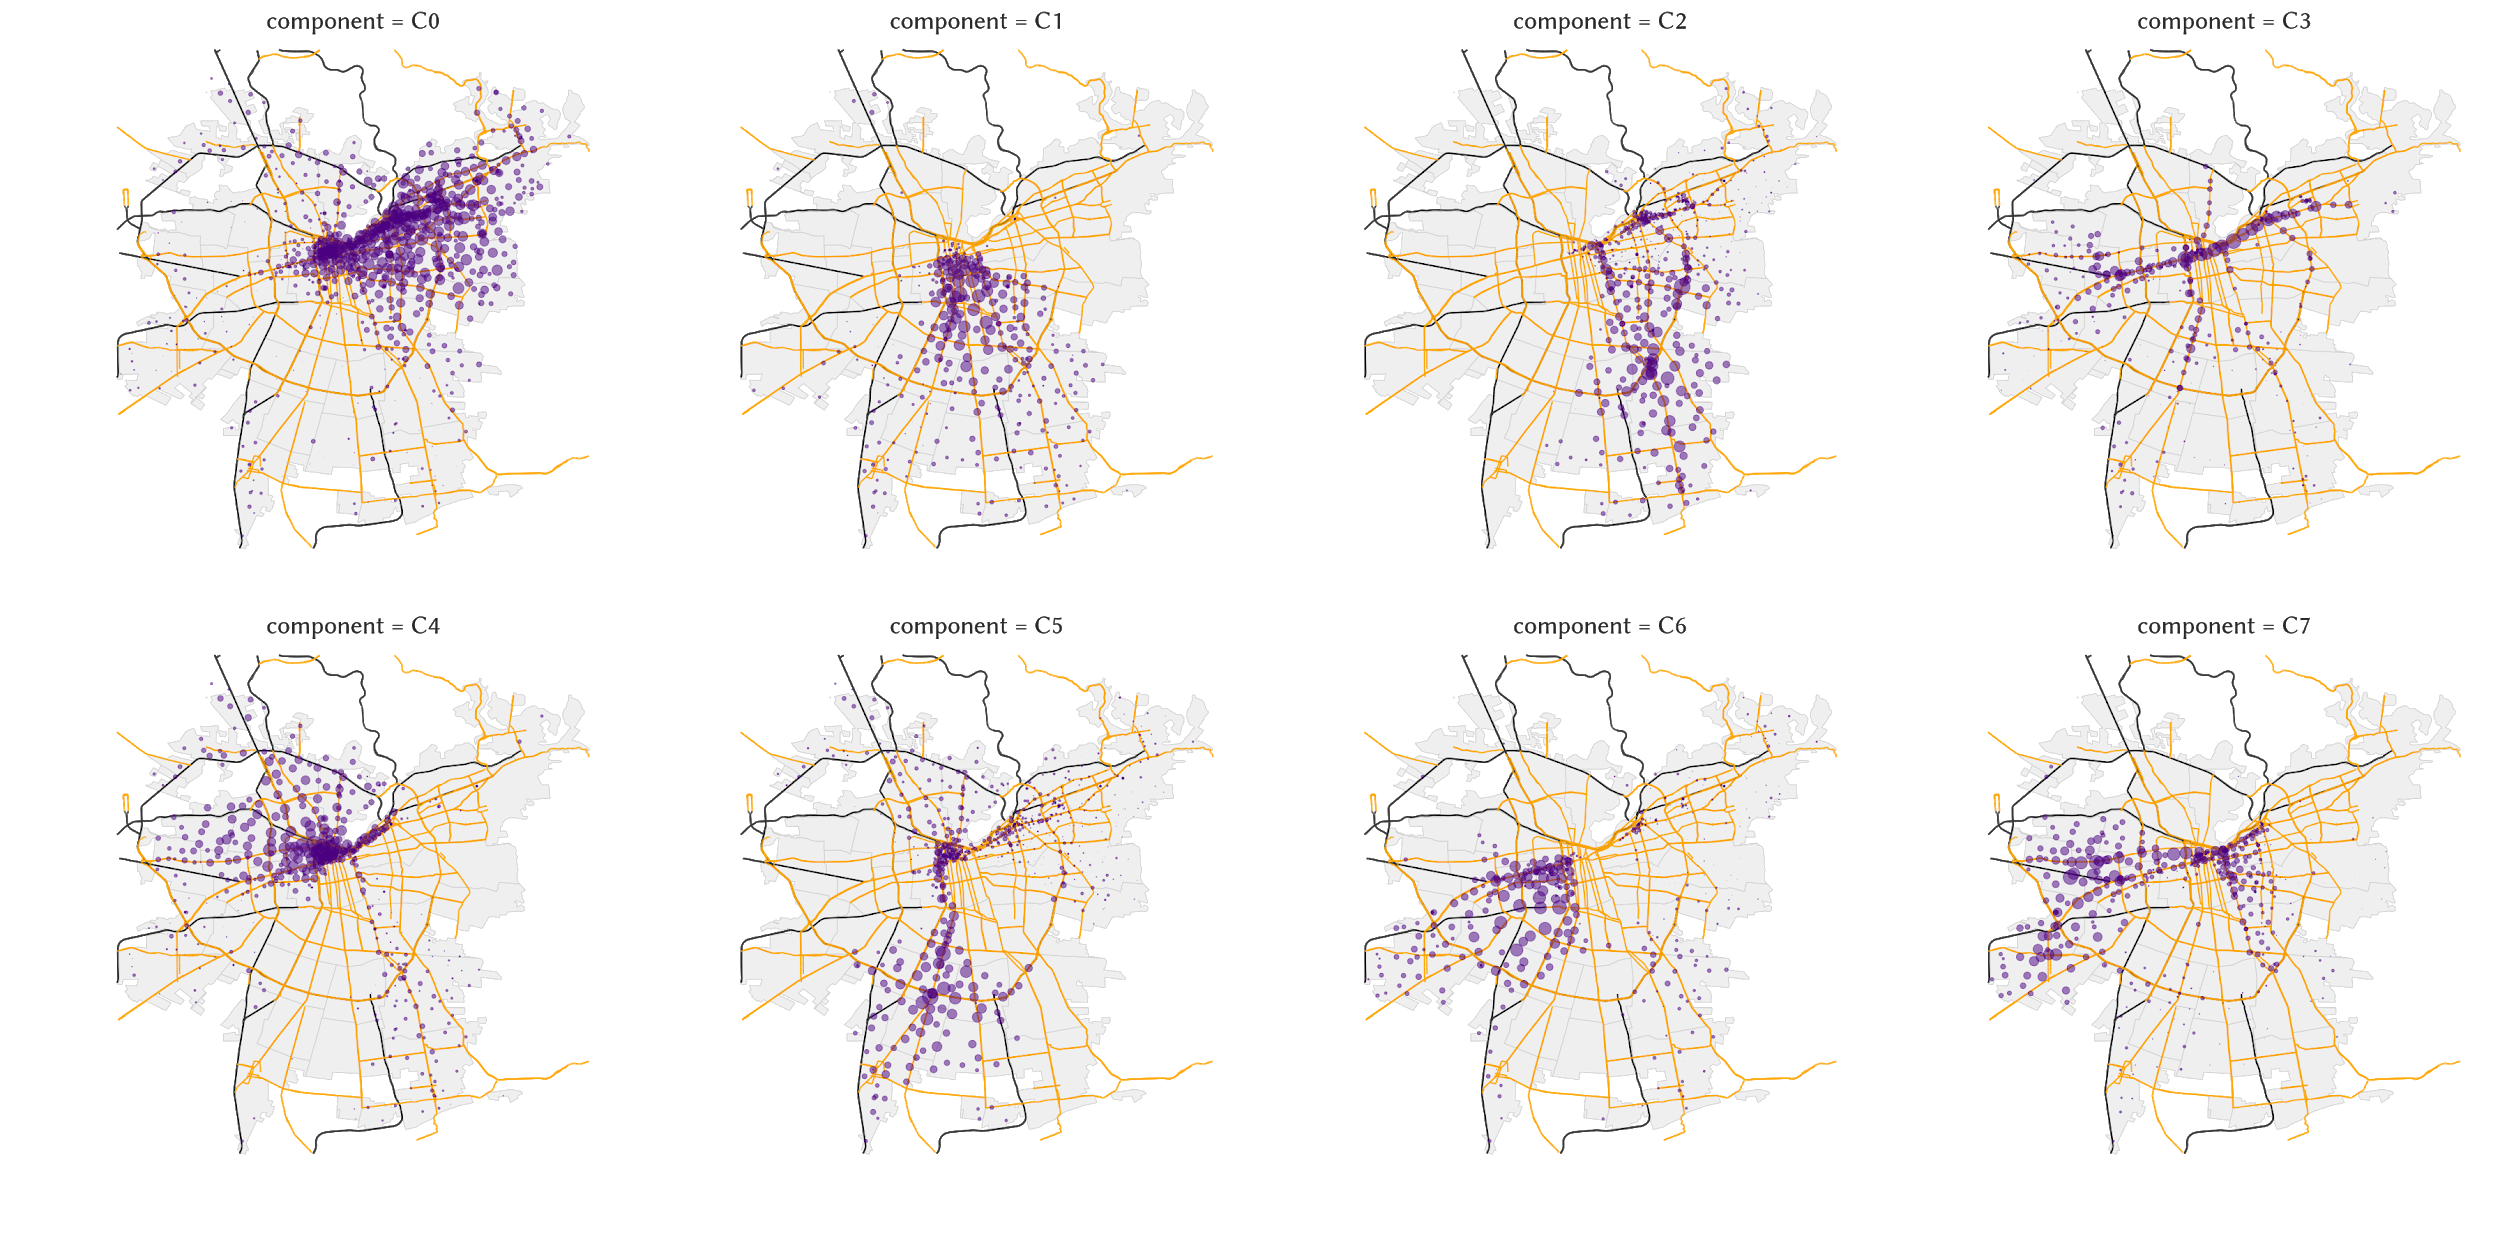 ¿Cuáles son los clúster de movilidad en las ciudad? Éstas son las ciudades “ocultas” de Santiago. https://medium.com/@carnby/las-ciudades-ocultas-en-santiago-qu%C3%A9-son-y-para-qu%C3%A9-sirven-9cce050540b8.